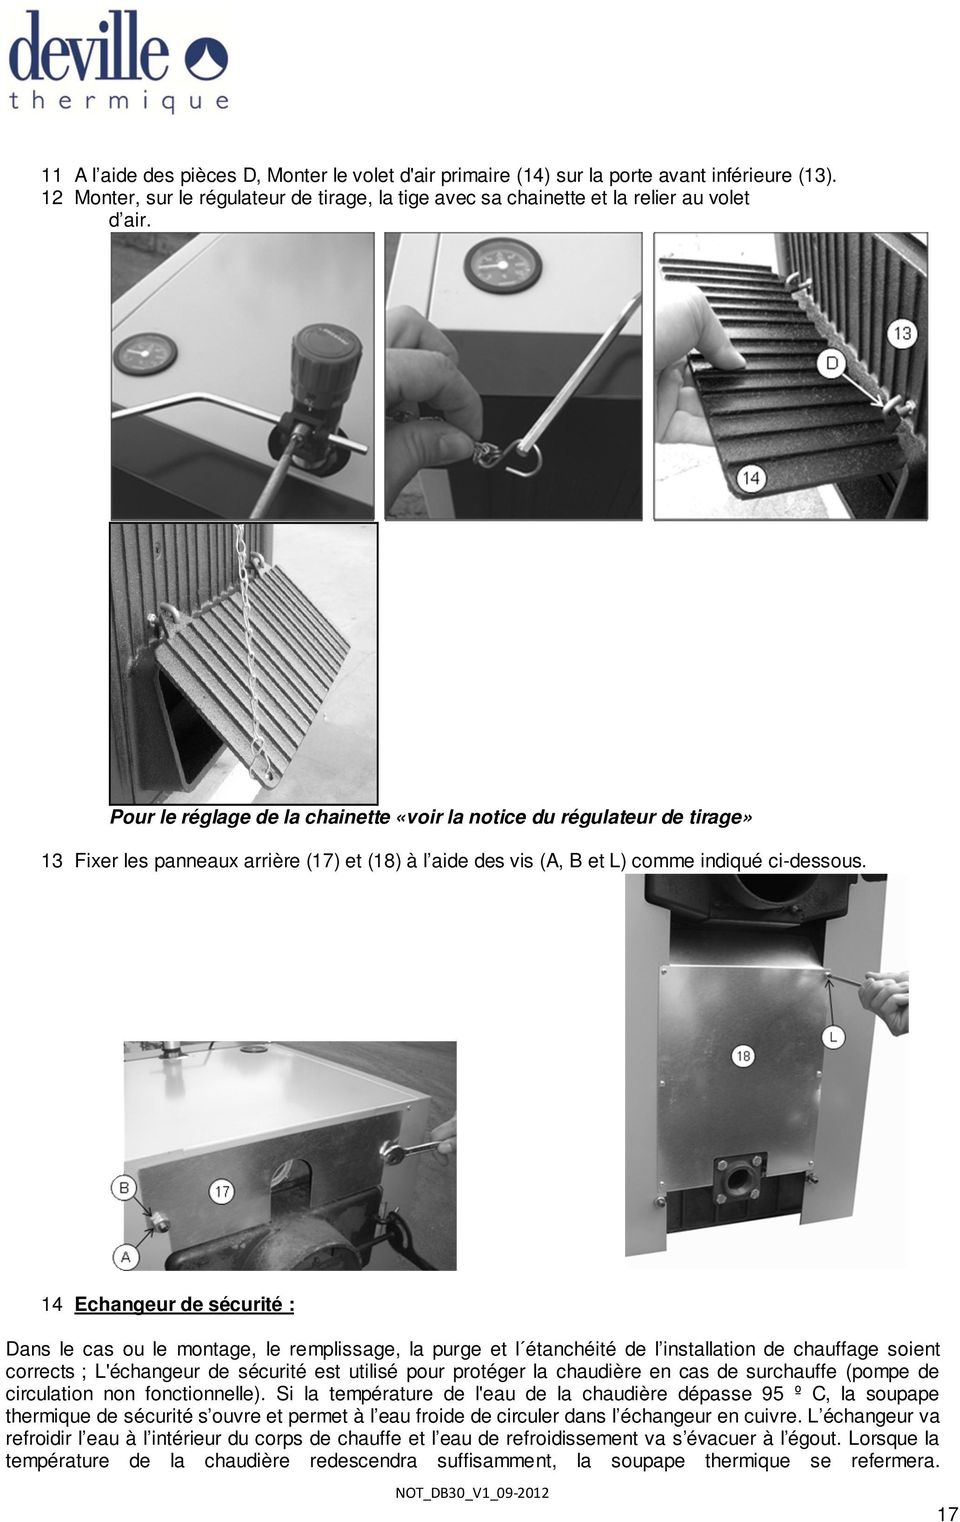 14 Echangeur de sécurité : Dans le cas ou le montage, le remplissage, la purge et l étanchéité de l installation de chauffage soient corrects ; L'échangeur de sécurité est utilisé pour protéger la